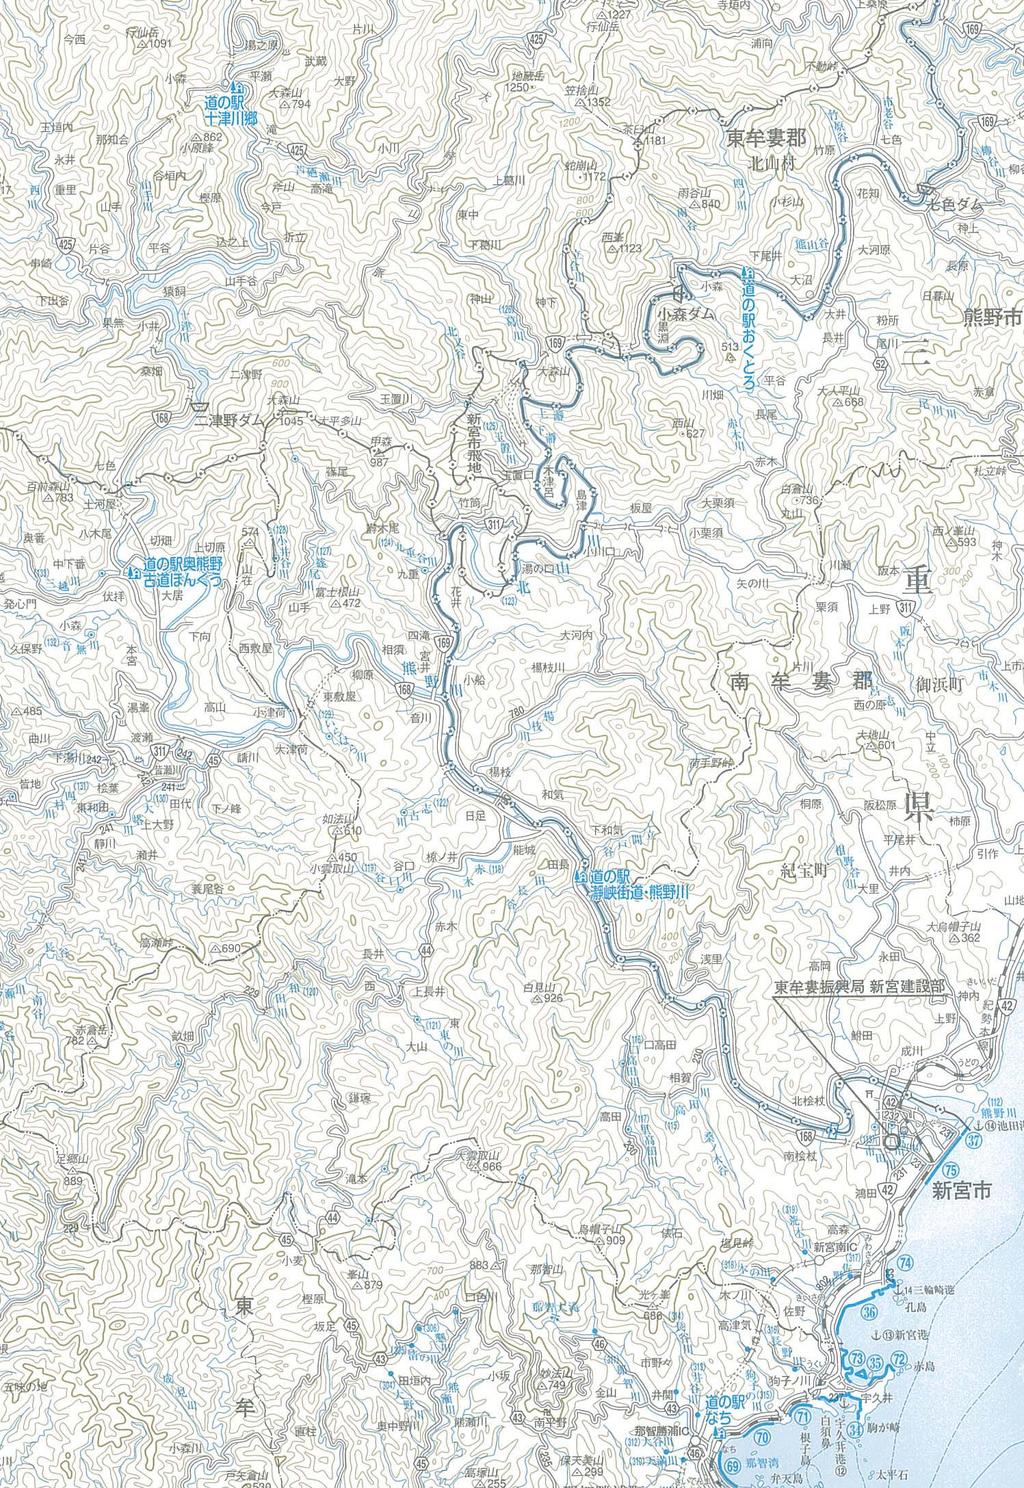 河道内堆積土砂対応状況 和歌山県 平成 25 年 7 月現在 資料 2-4 台風 12 号時本宮地区 台風 12 号時日足地区 奈良県境 約 430 万 m3 8 水面上 0.